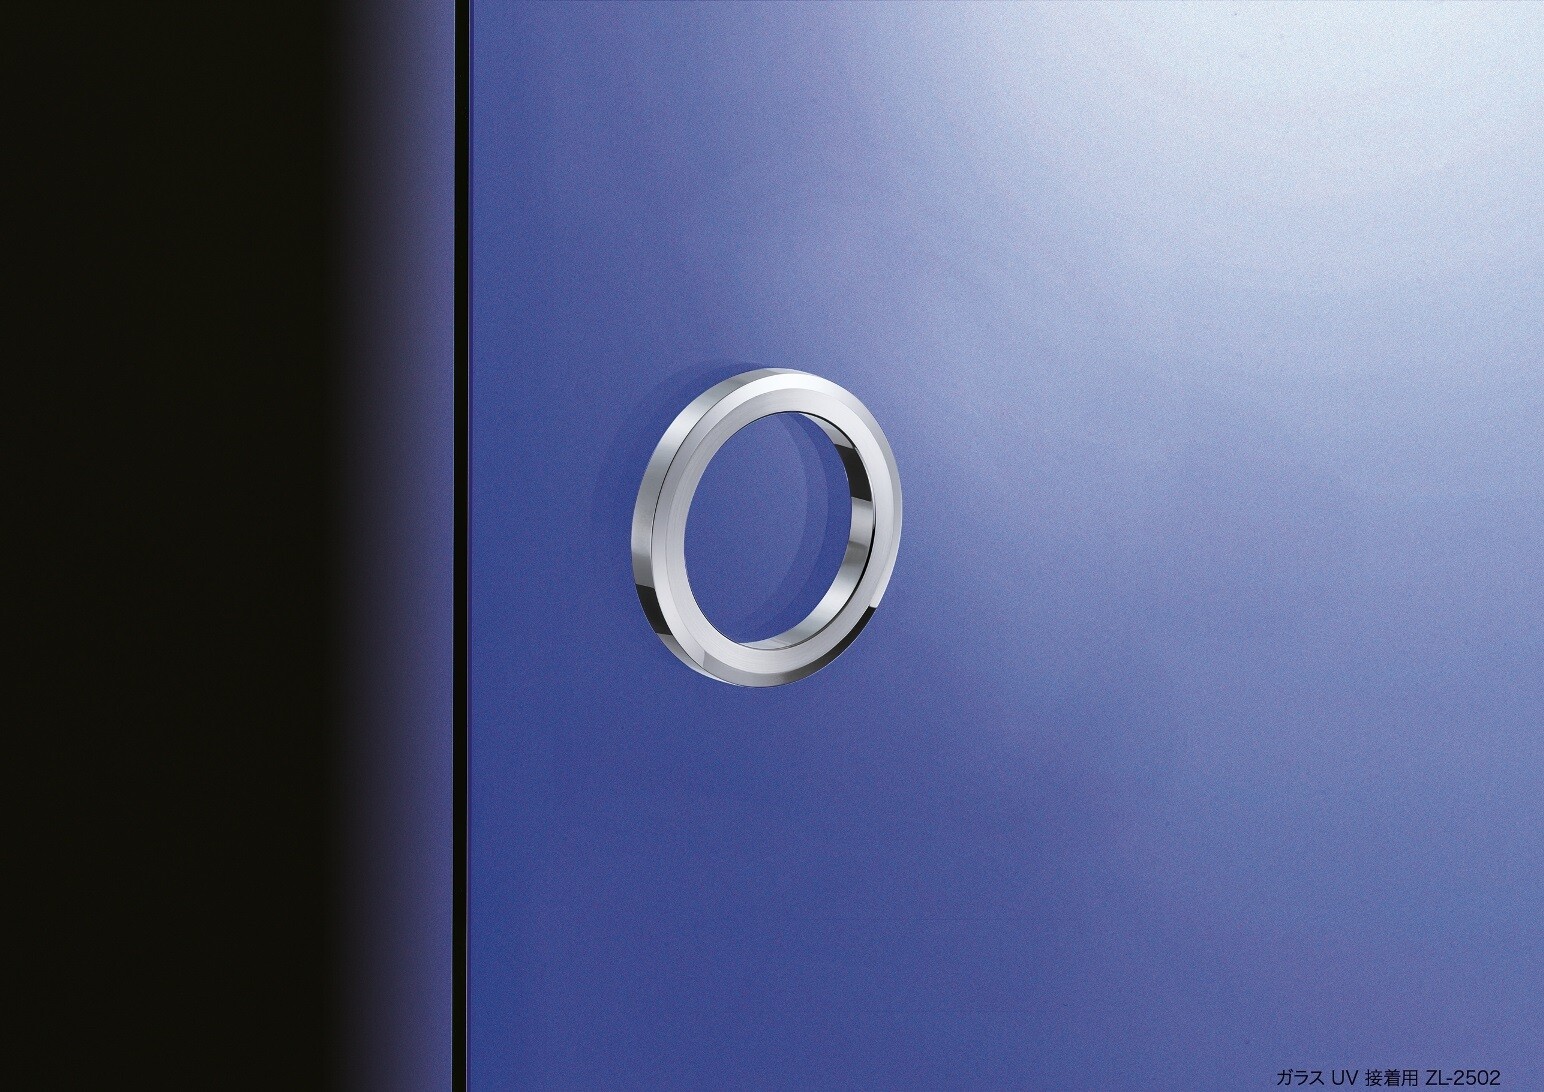 Pomello per mobili in acciaio inox ZweiL® per porta in vetro, 56 mm (2.3″)  ZL-2502-56. Manopola maniglia per porta di alta qualità, solida ed elegante  per porte in vetro, realizzata nel miglior